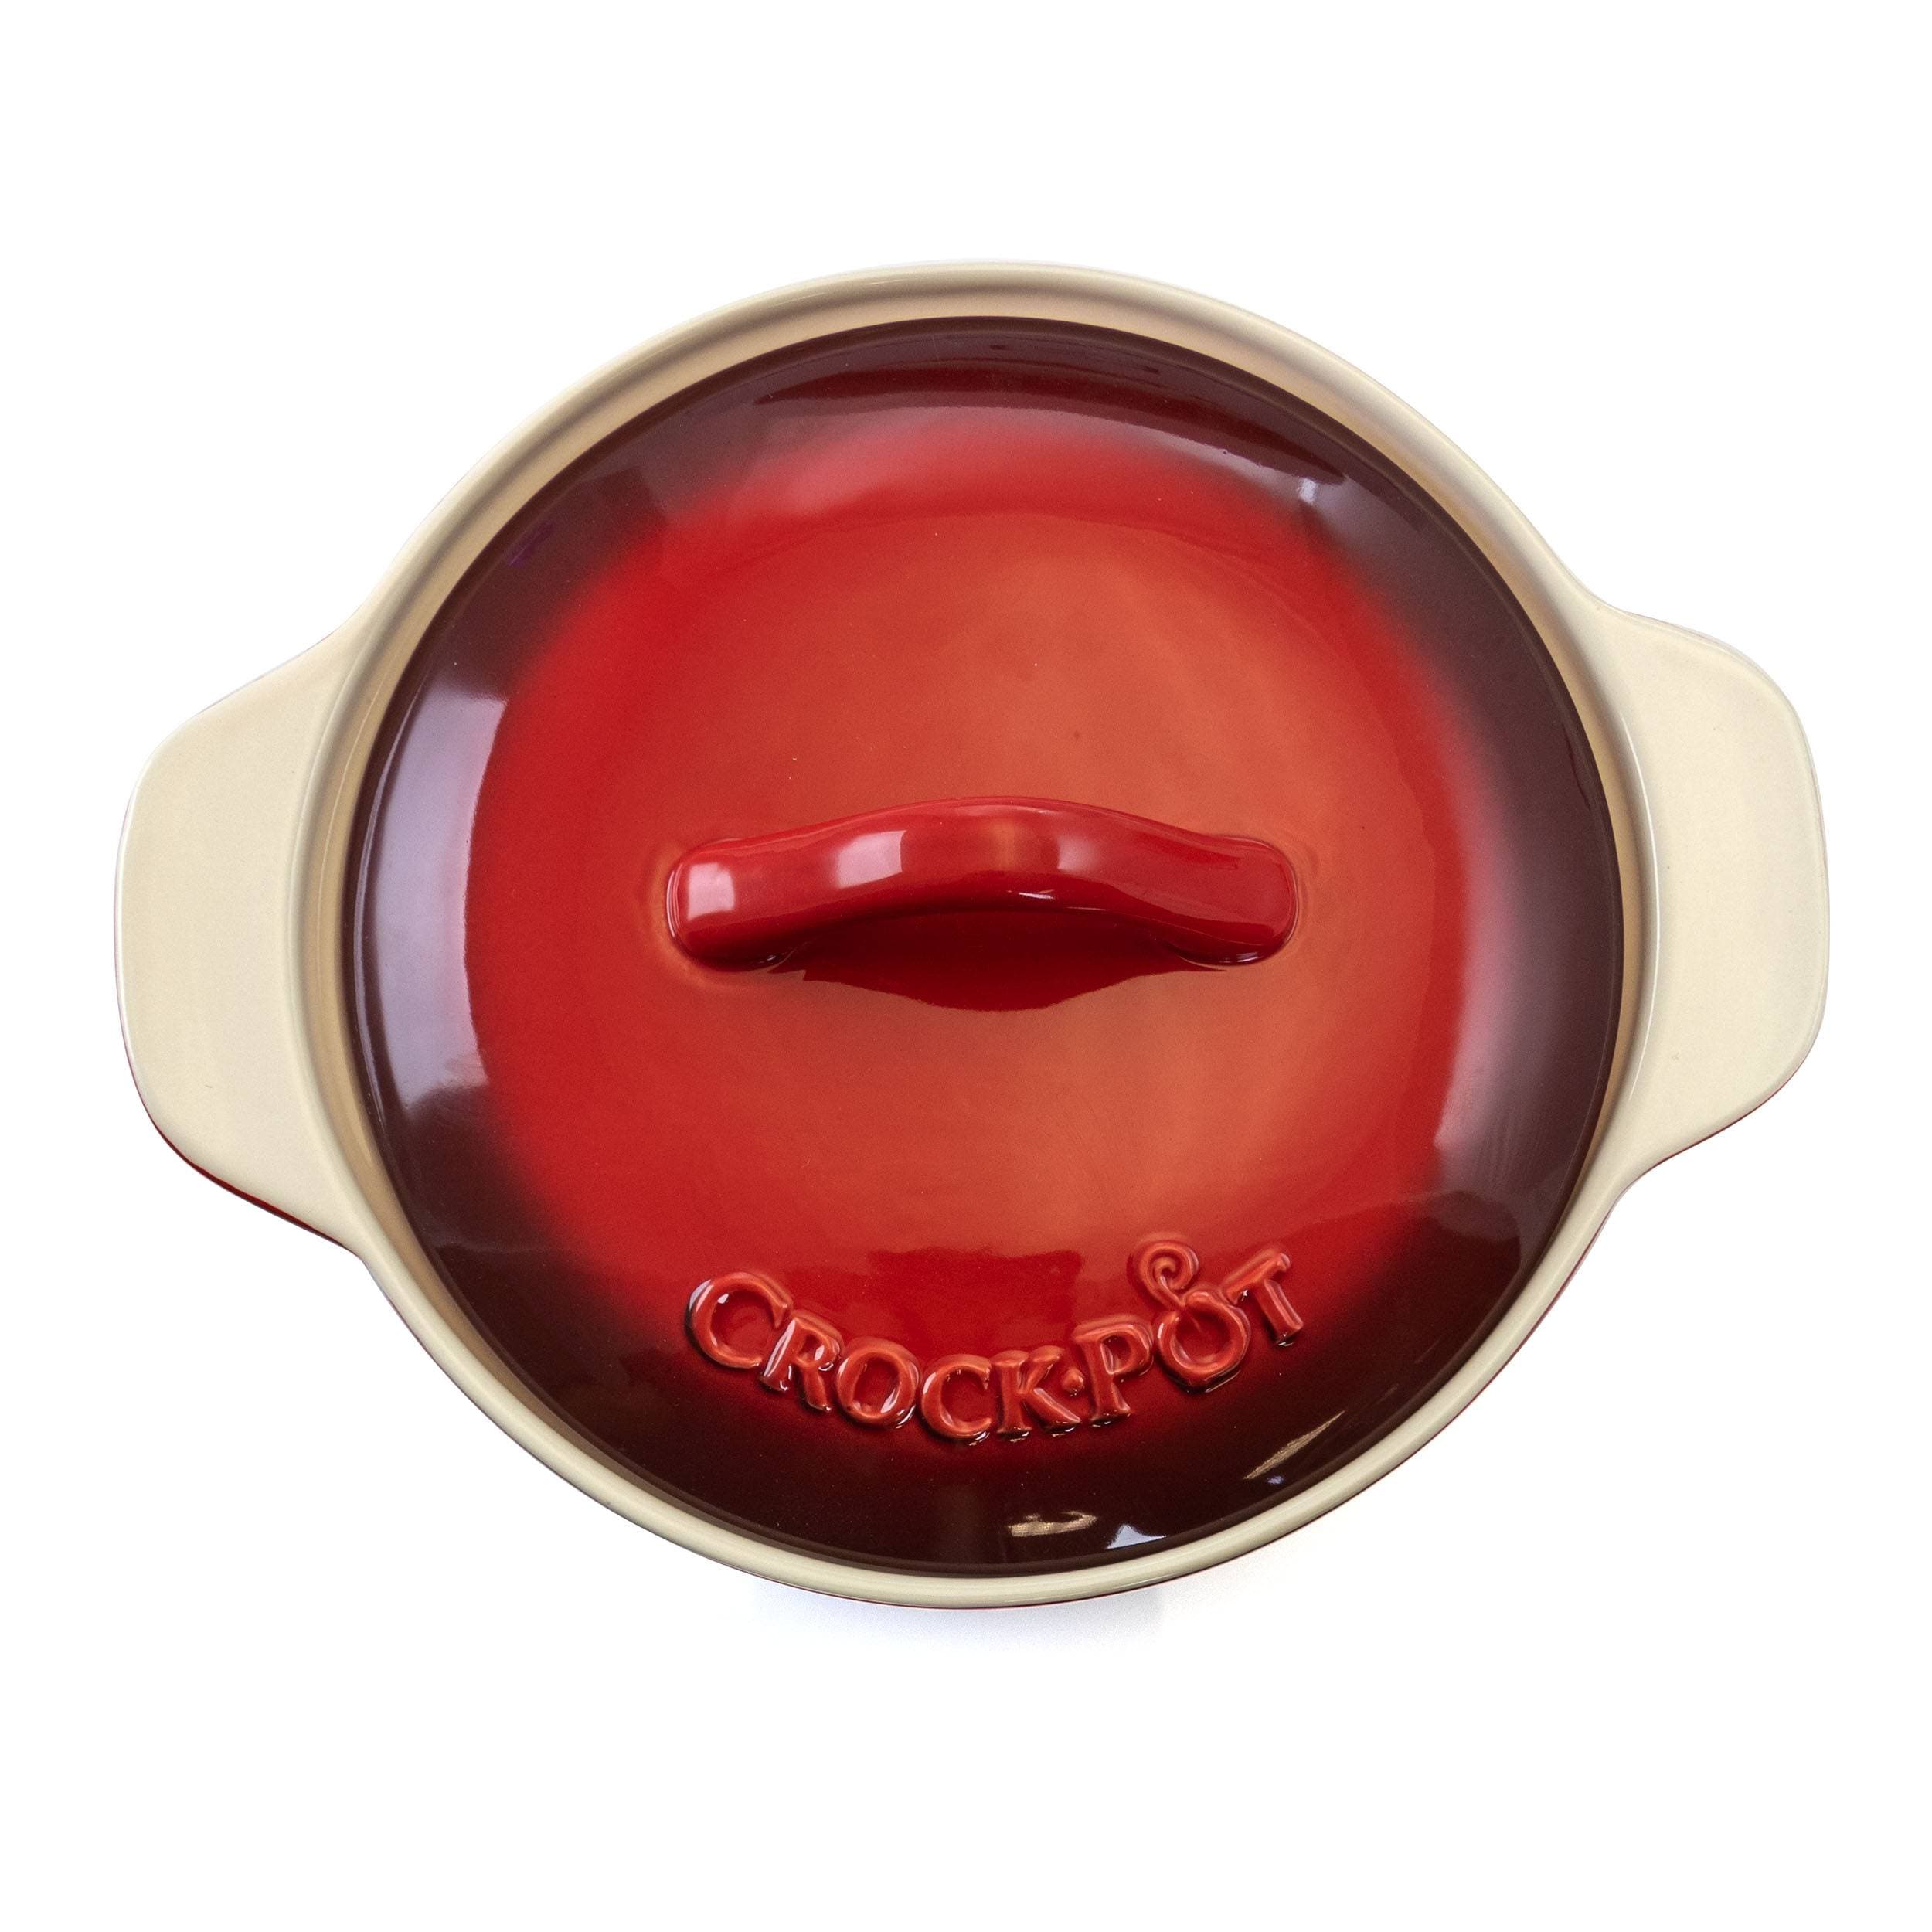 Crock Pot Artisan 5.6 Quart Stoneware Bake Pan In Red : Target